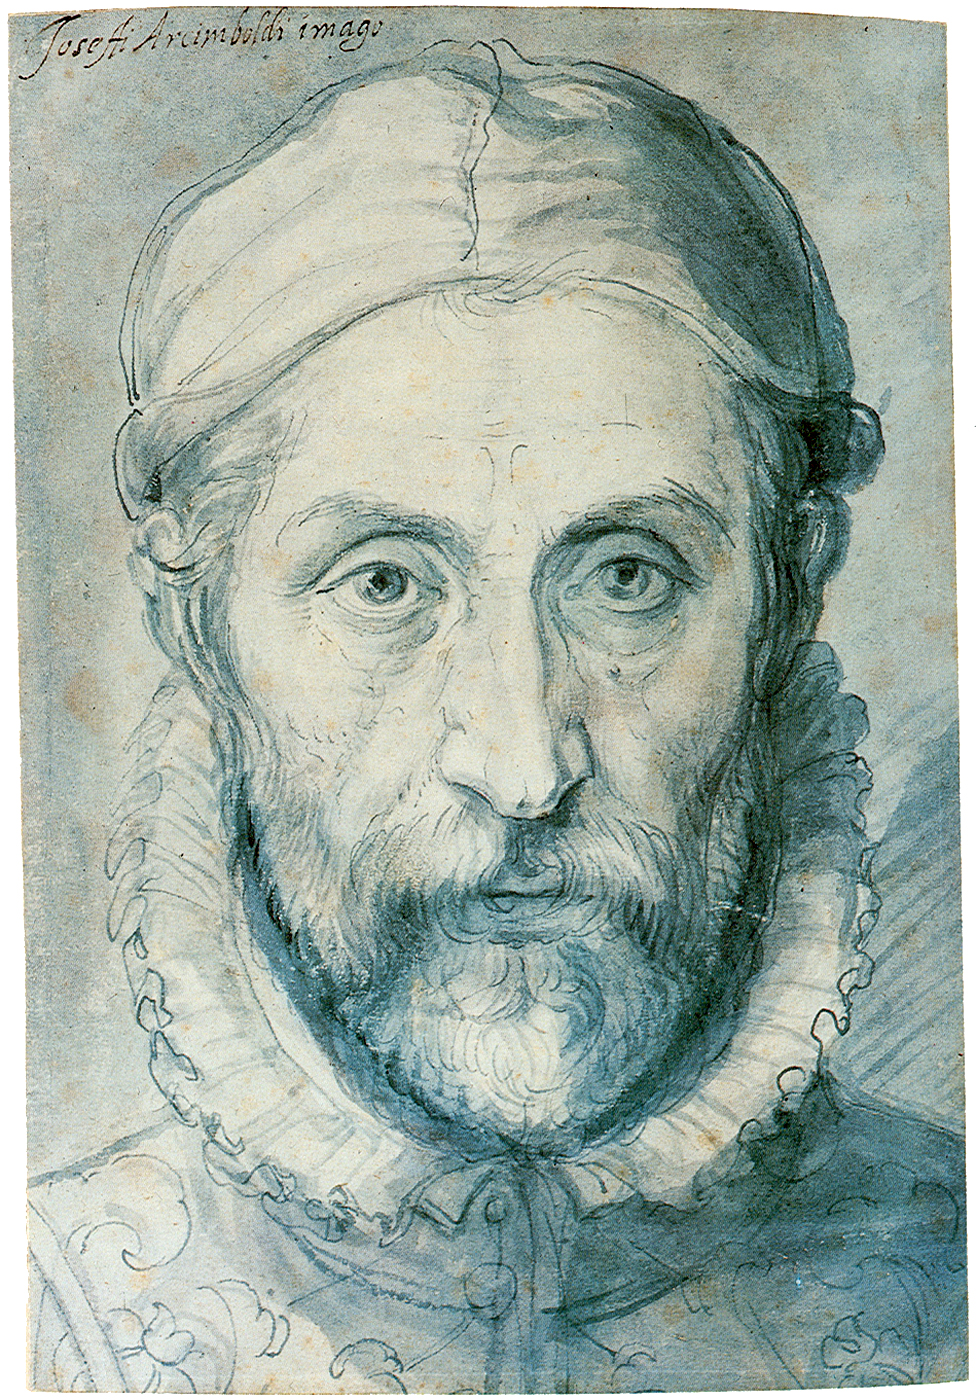 Giuseppe Arcimboldo - 1526/7 - 11 de Julho, 1593